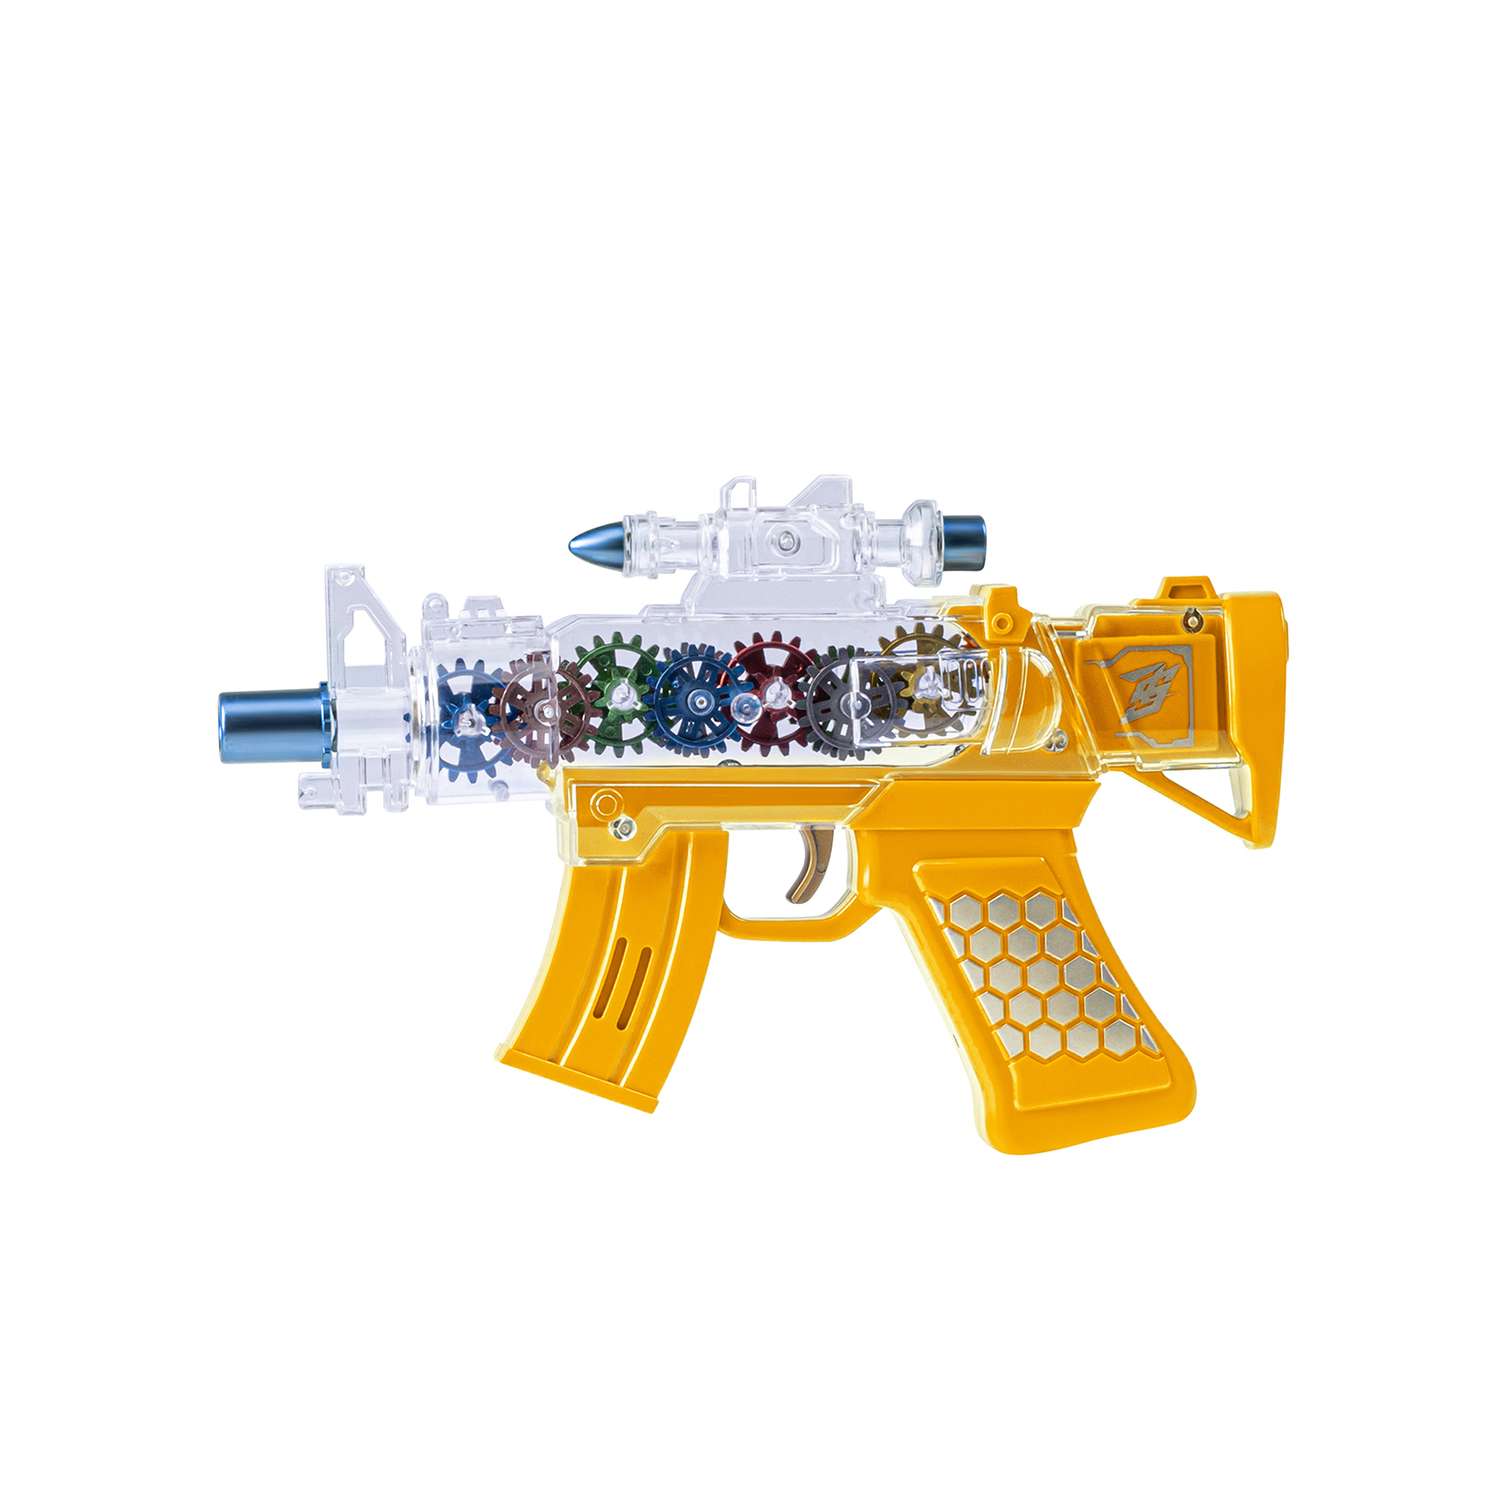 Игрушечное оружие Маленький Воин Автомат на батарейках Свет Звук Подвижные детали Цвет желтый - фото 6